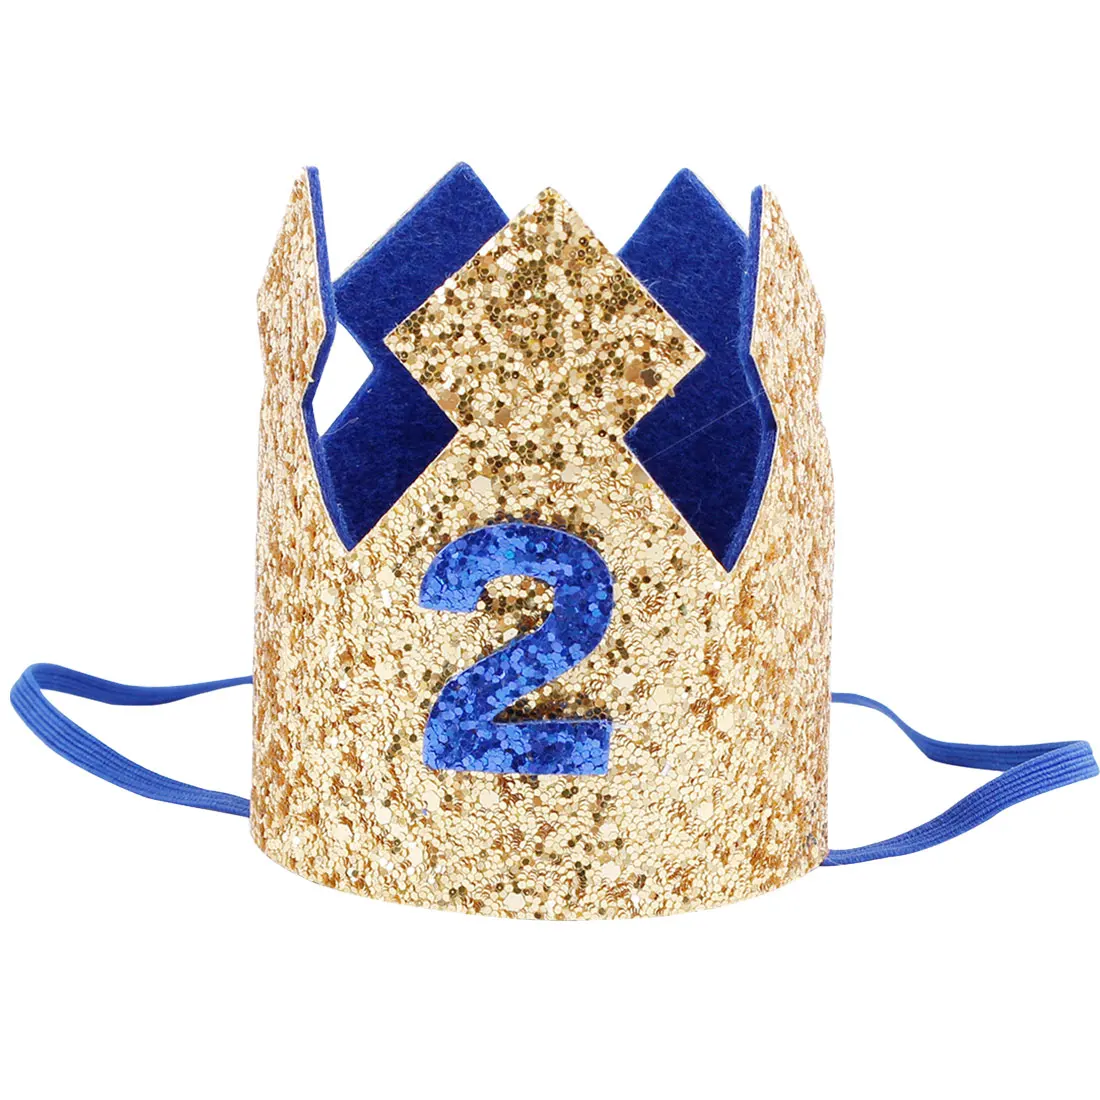 Шапки ко дню рождения цветок корона 1 день рождения шапка новорожденного ребенка ободок для дня рождения 1 год День рождения украшения вечерние шапки - Цвет: blue 2